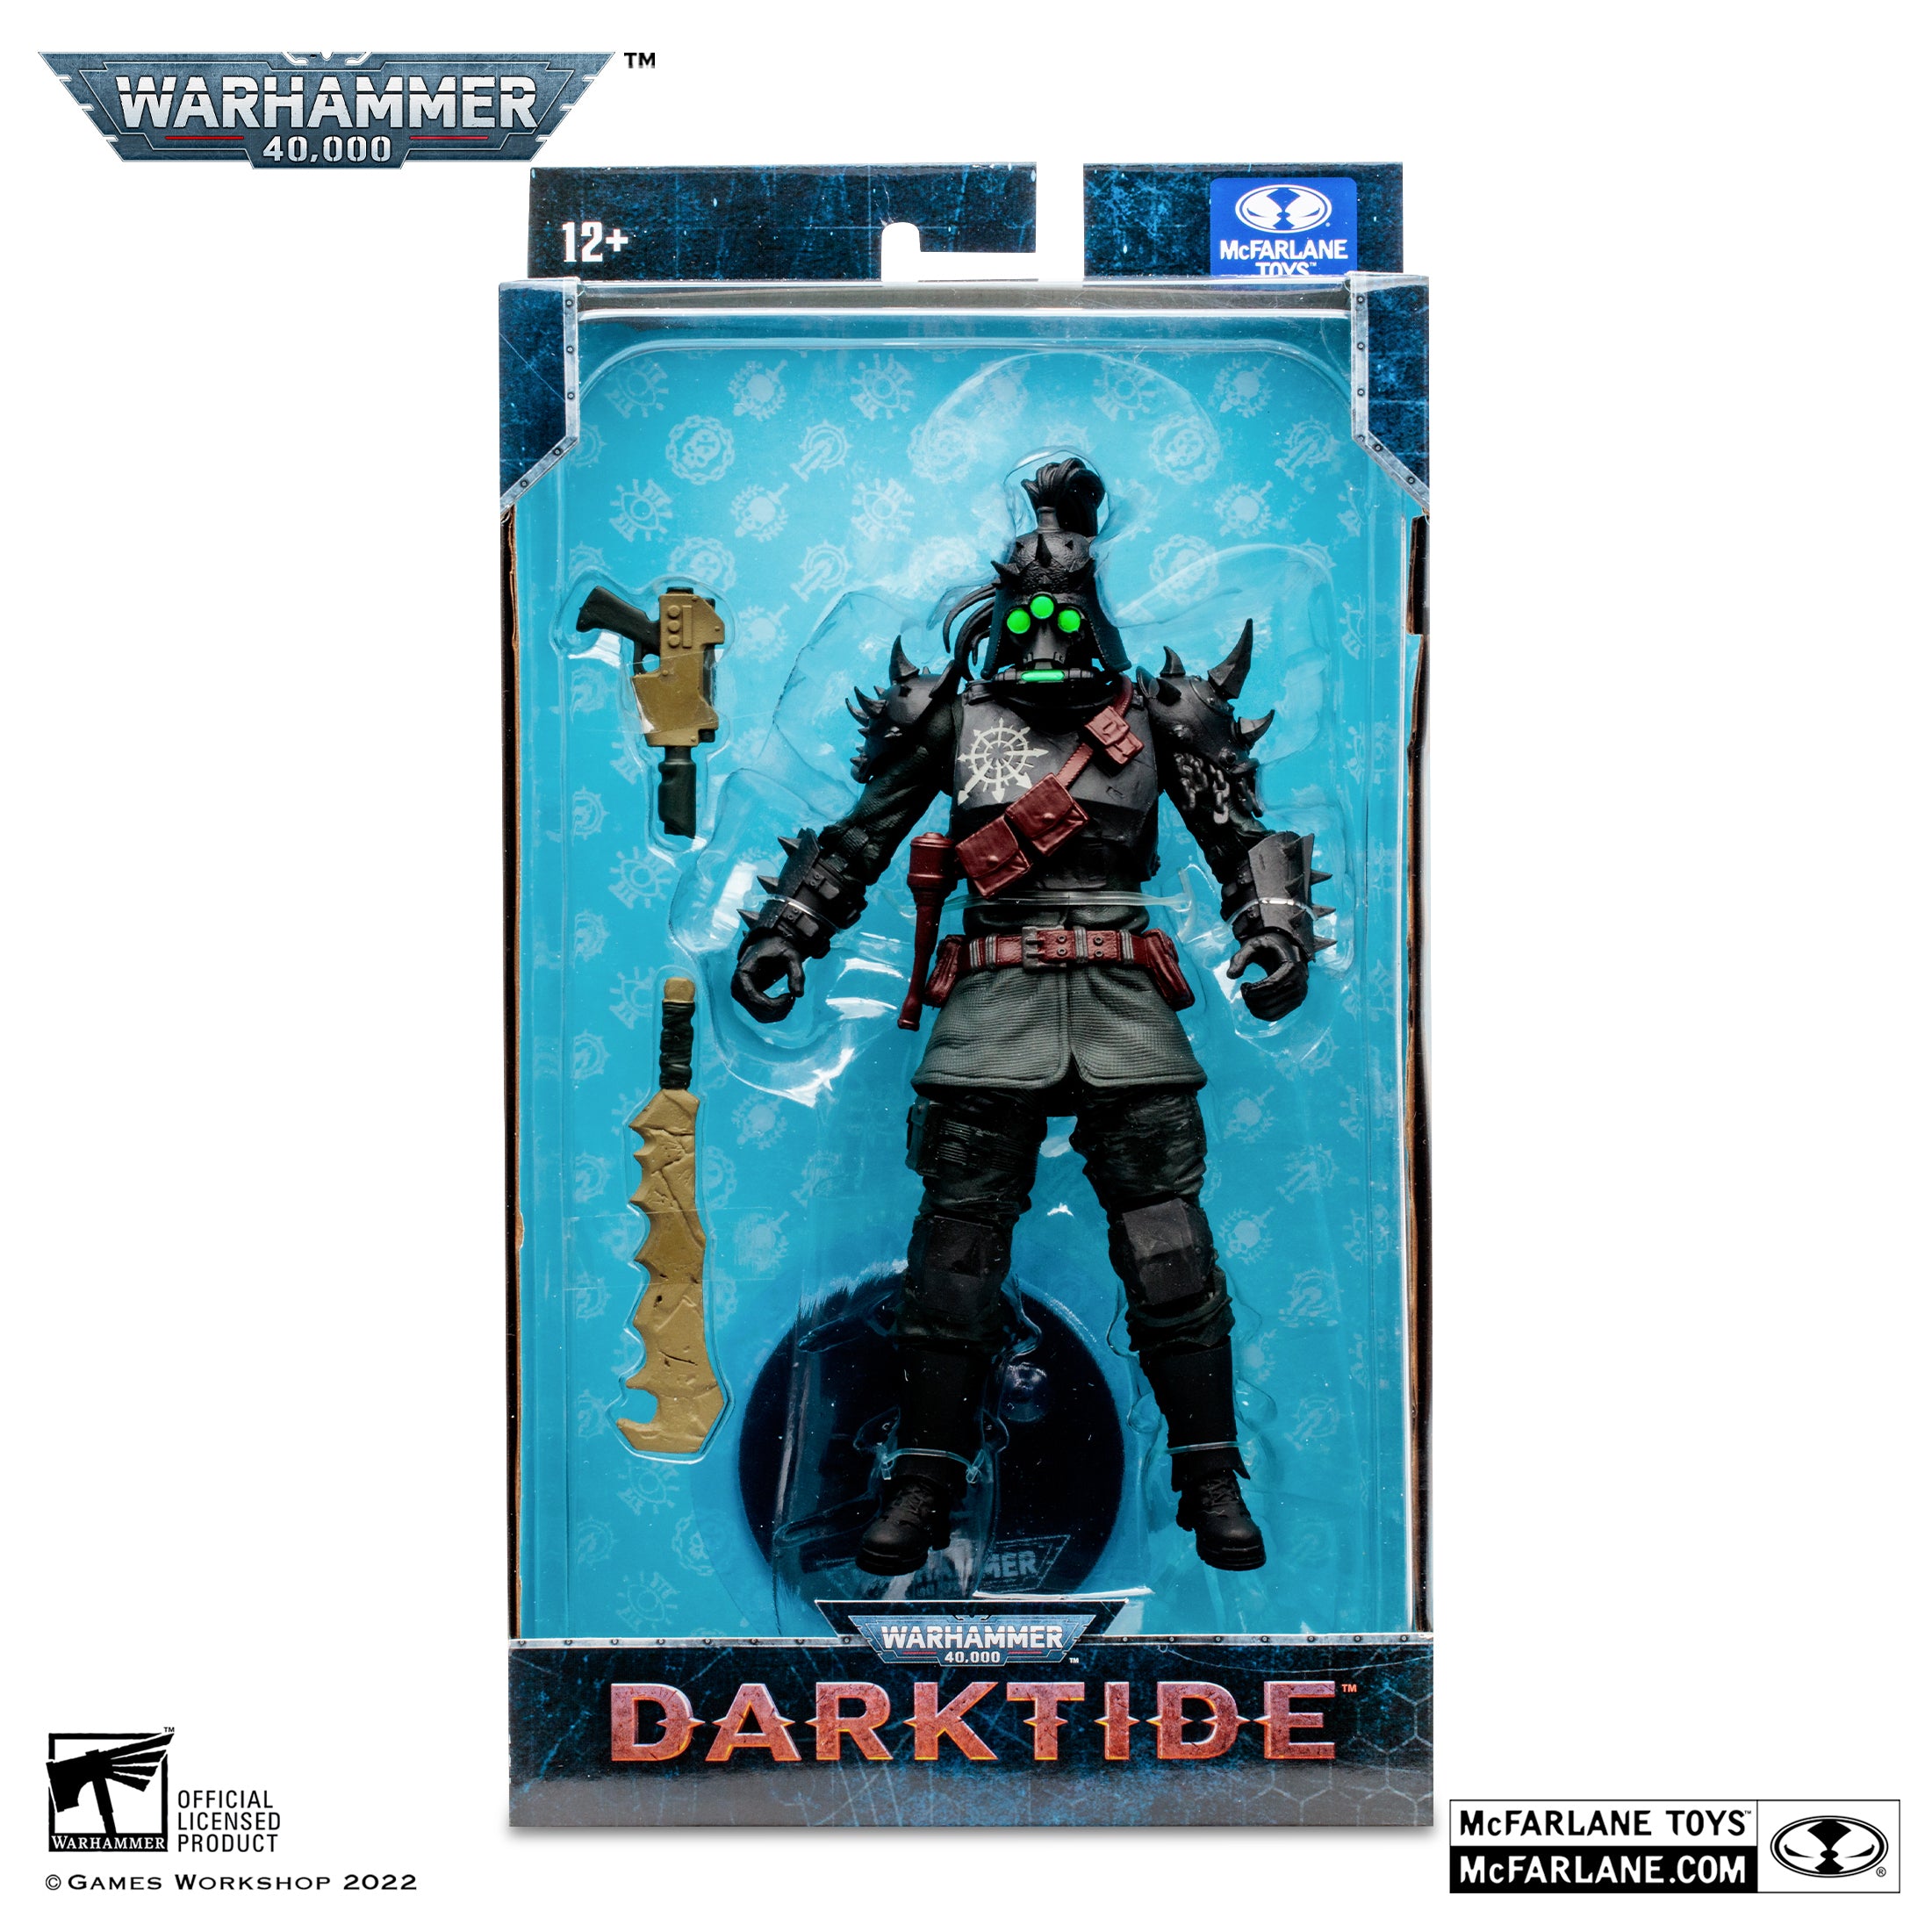 Warhammer 40,000 Darktide Traitor Guard Variant By Mcfarlane